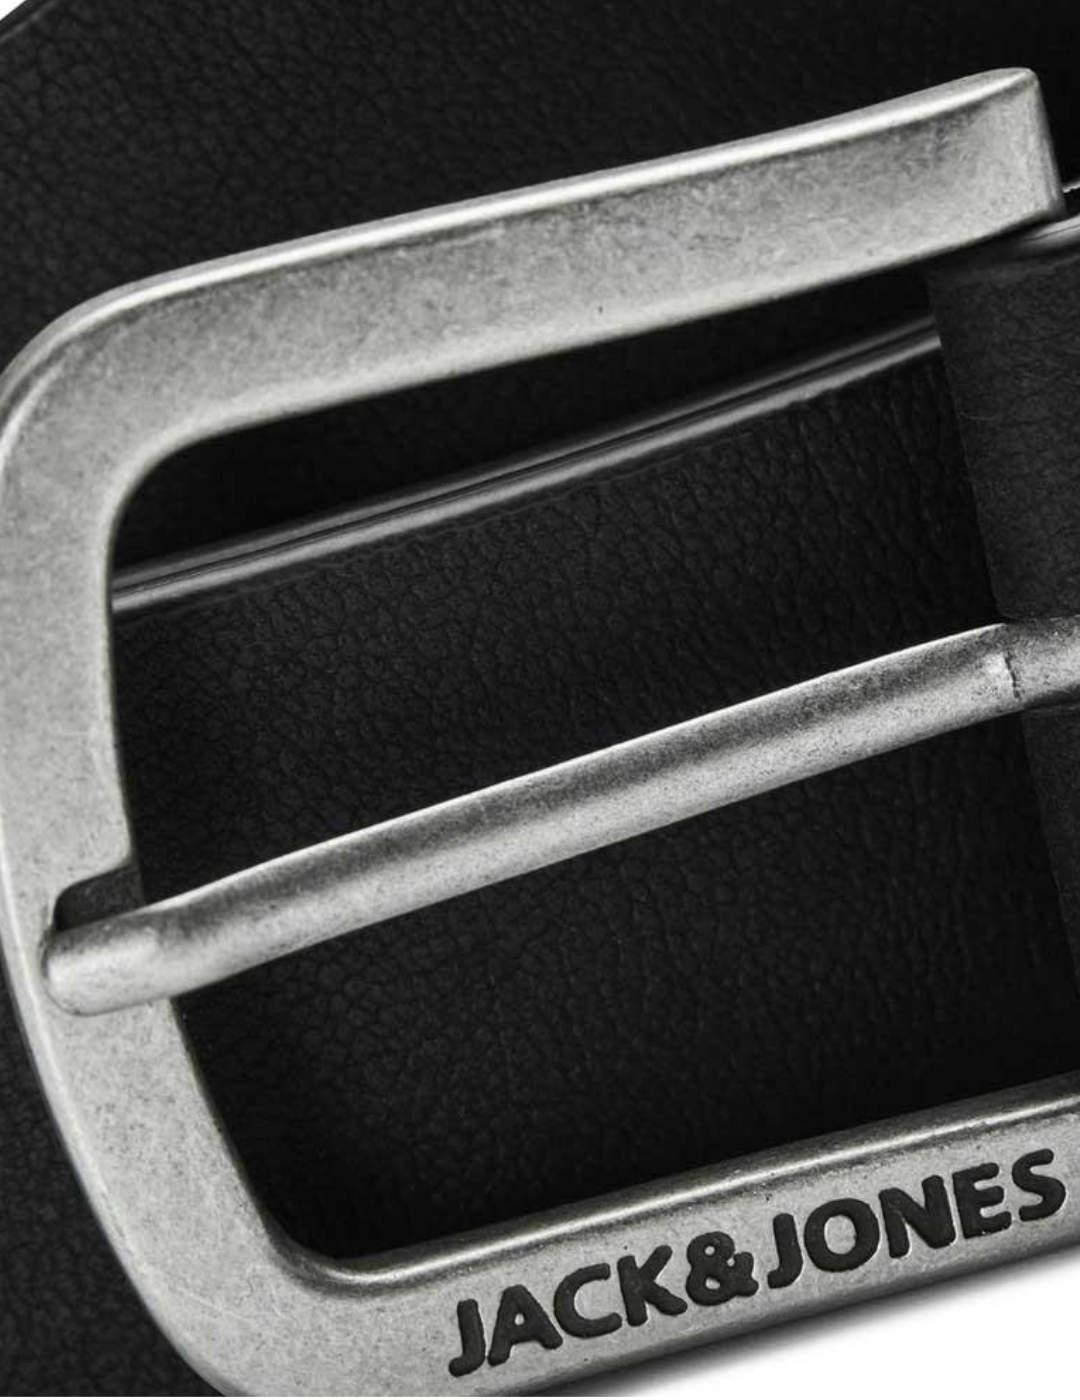 Cinturón Jack&jones harry negro hebilla metalica para hombre